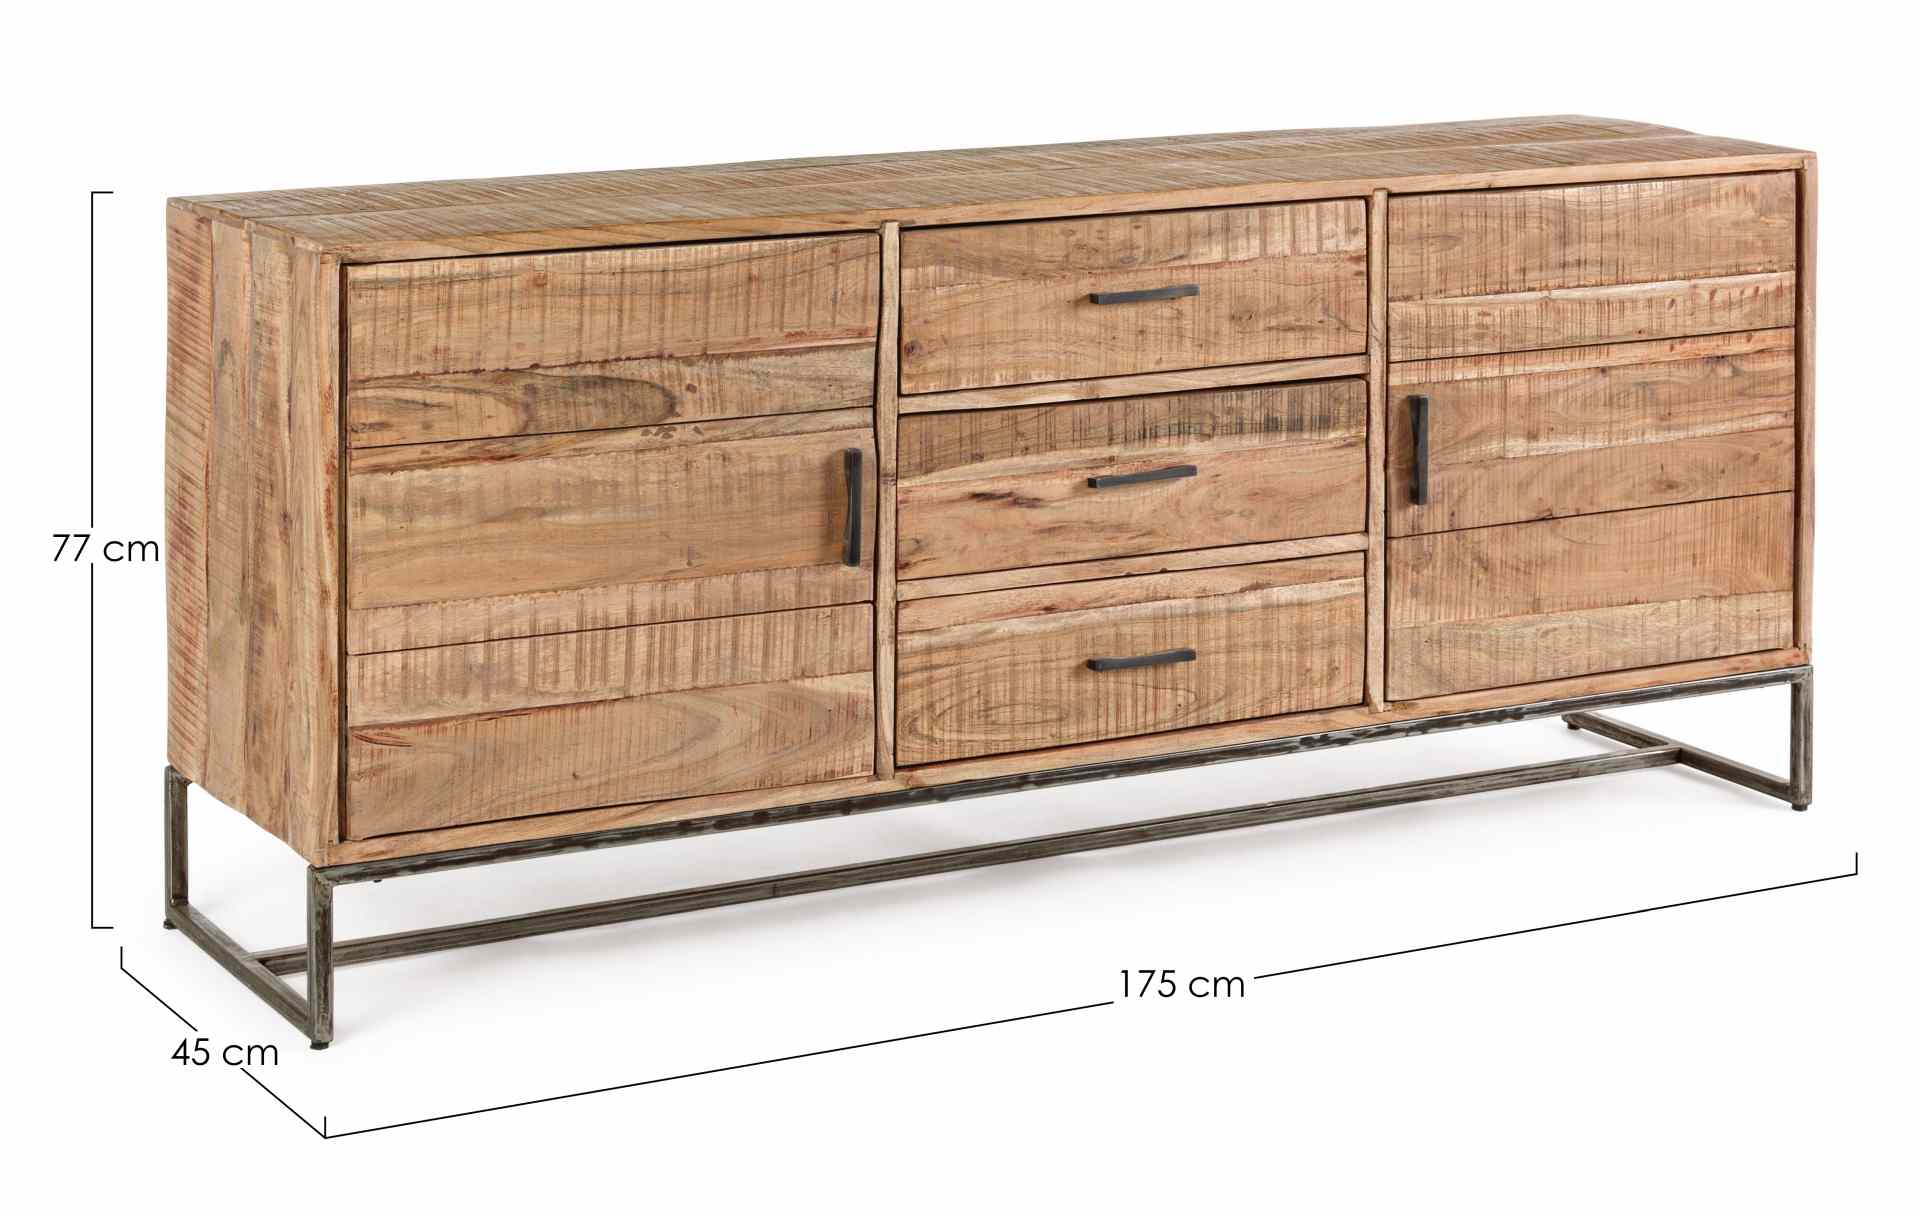 Das Sideboard Elmer überzeugt mit seinem industriellem Design. Gefertigt wurde es aus Akazien-Holz, welches einen natürlichen Farbton besitzt. Das Gestell ist aus Metall und hat eine schwarze Farbe. Das Sideboard verfügt über zwei Türen und drei Schublade